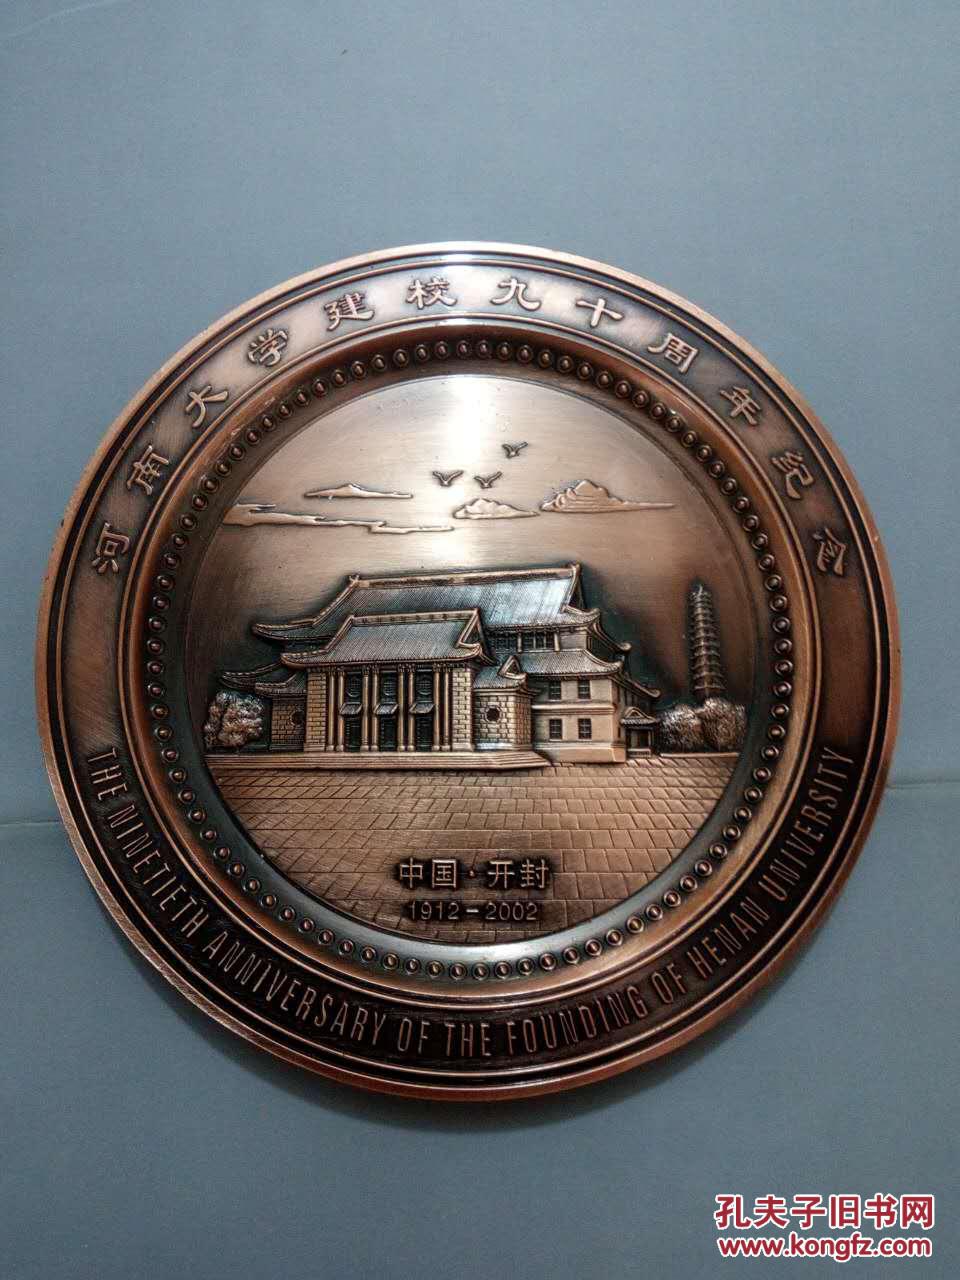 河南大学建校九十周年纪念 大铜章 明德新民 止于至善